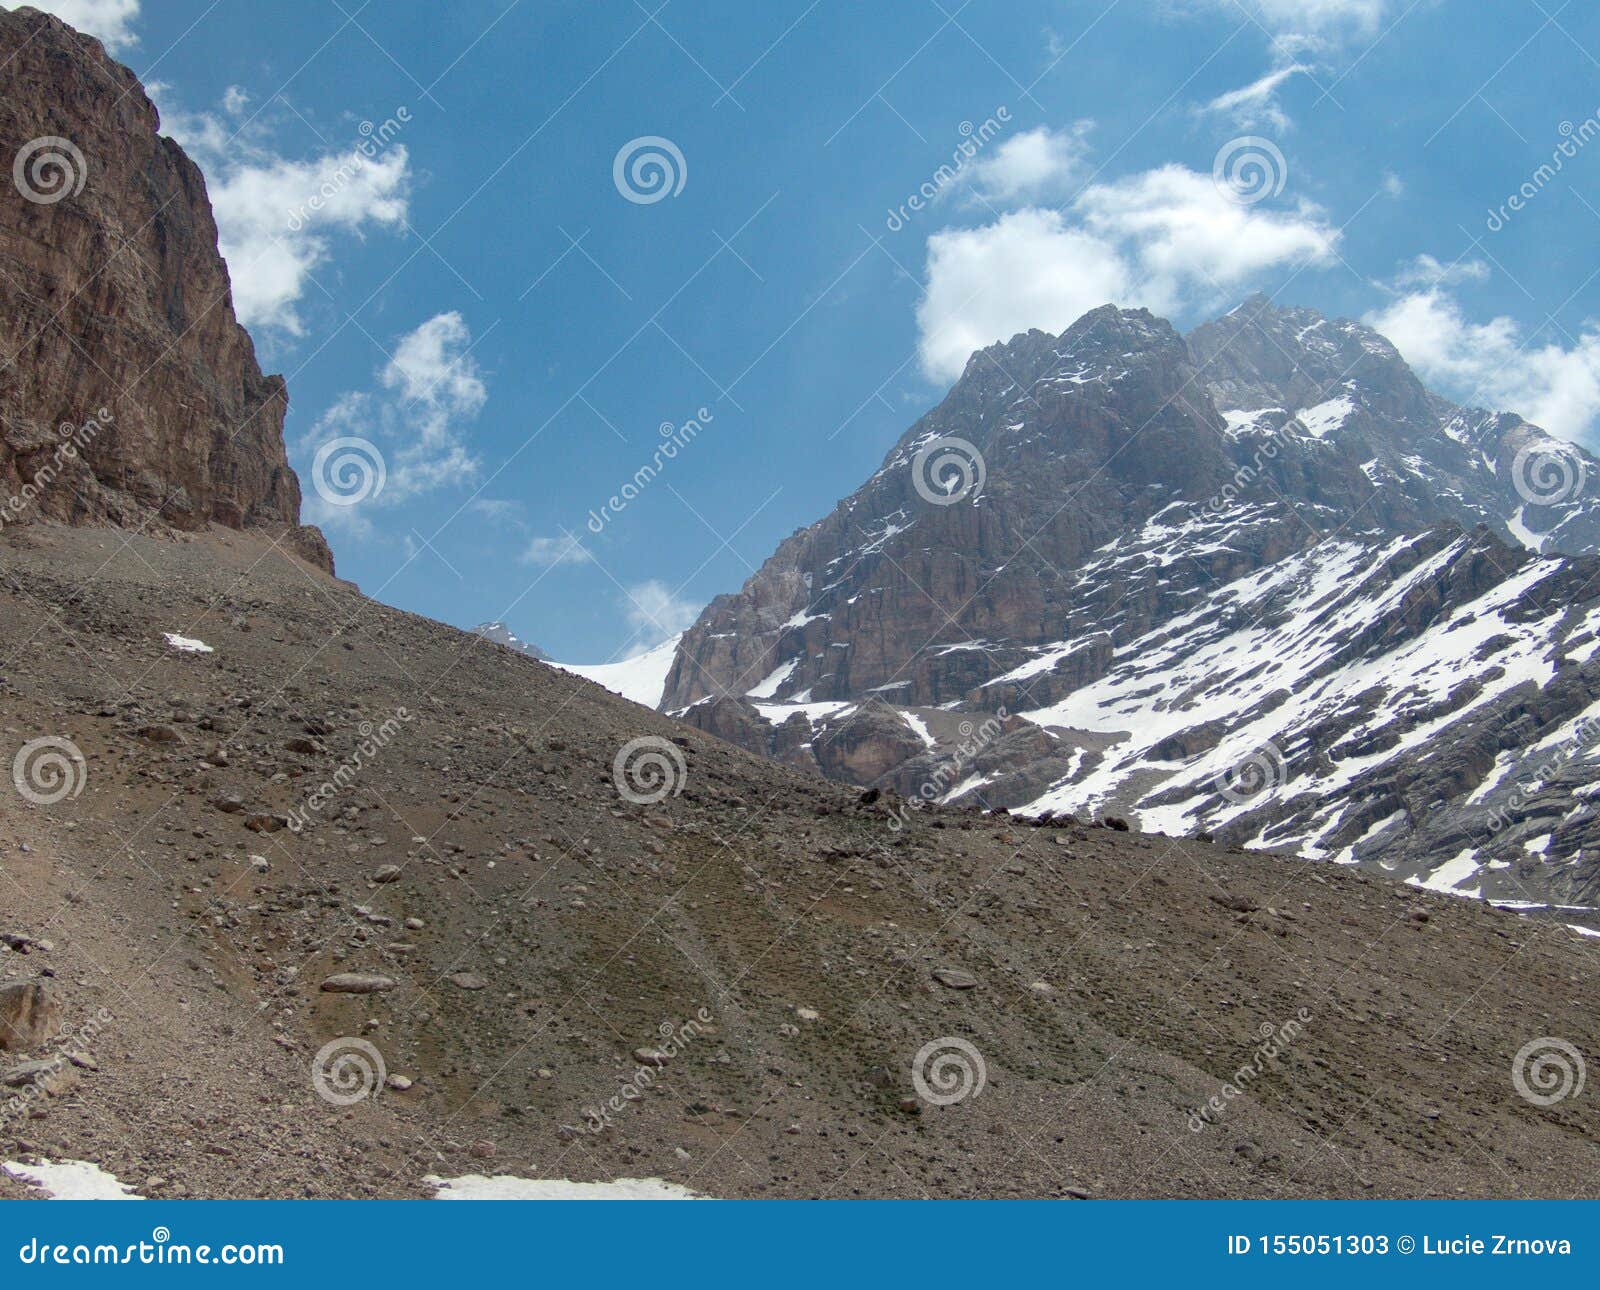 Beautiful Hiking in Fann Mountains Nature in Tajikistan Stock Image ...